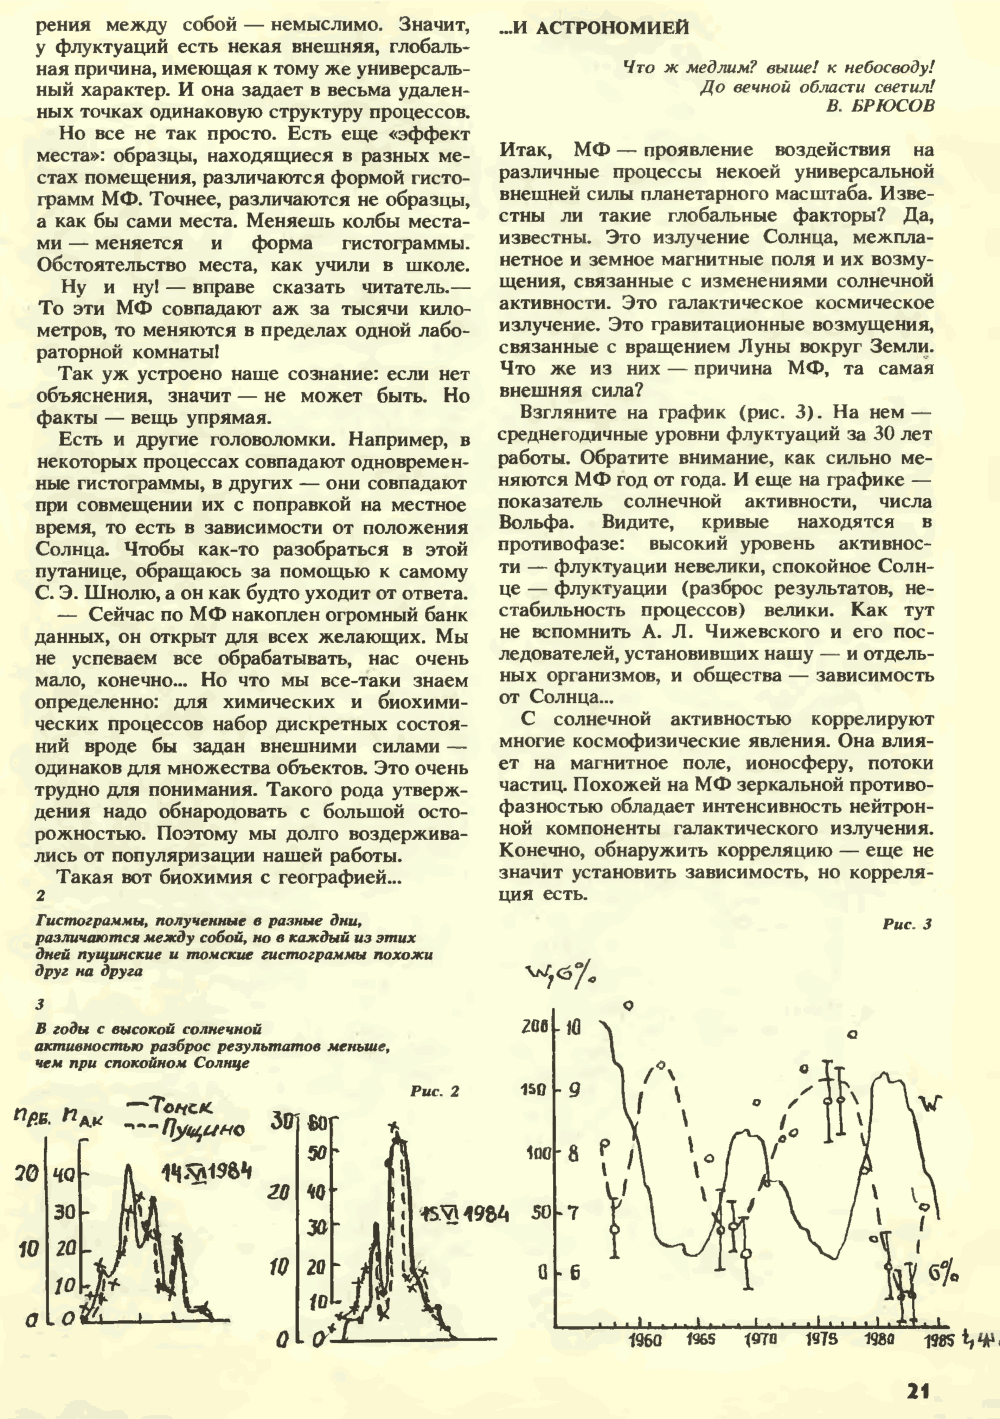 Внешняя сила. С.Н. Катасонов. Химия и жизнь, 1990, №7, с.16-22. Фотокопия №6